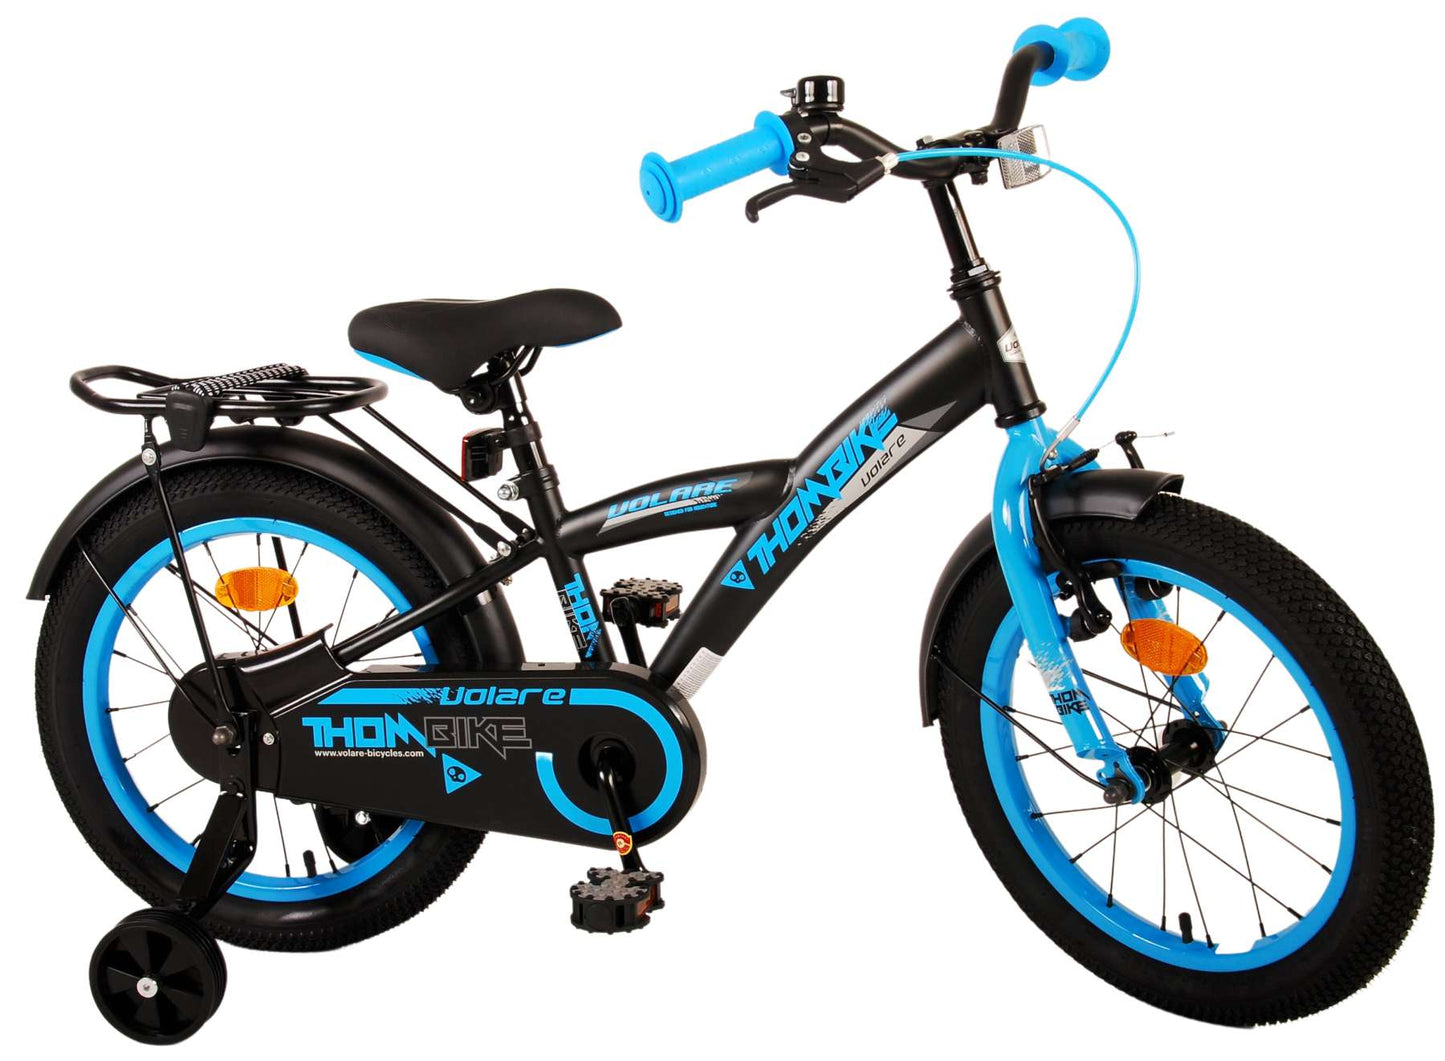 Bike per bambini Volare Thbike - Boys - 16 pollici - Blu nero